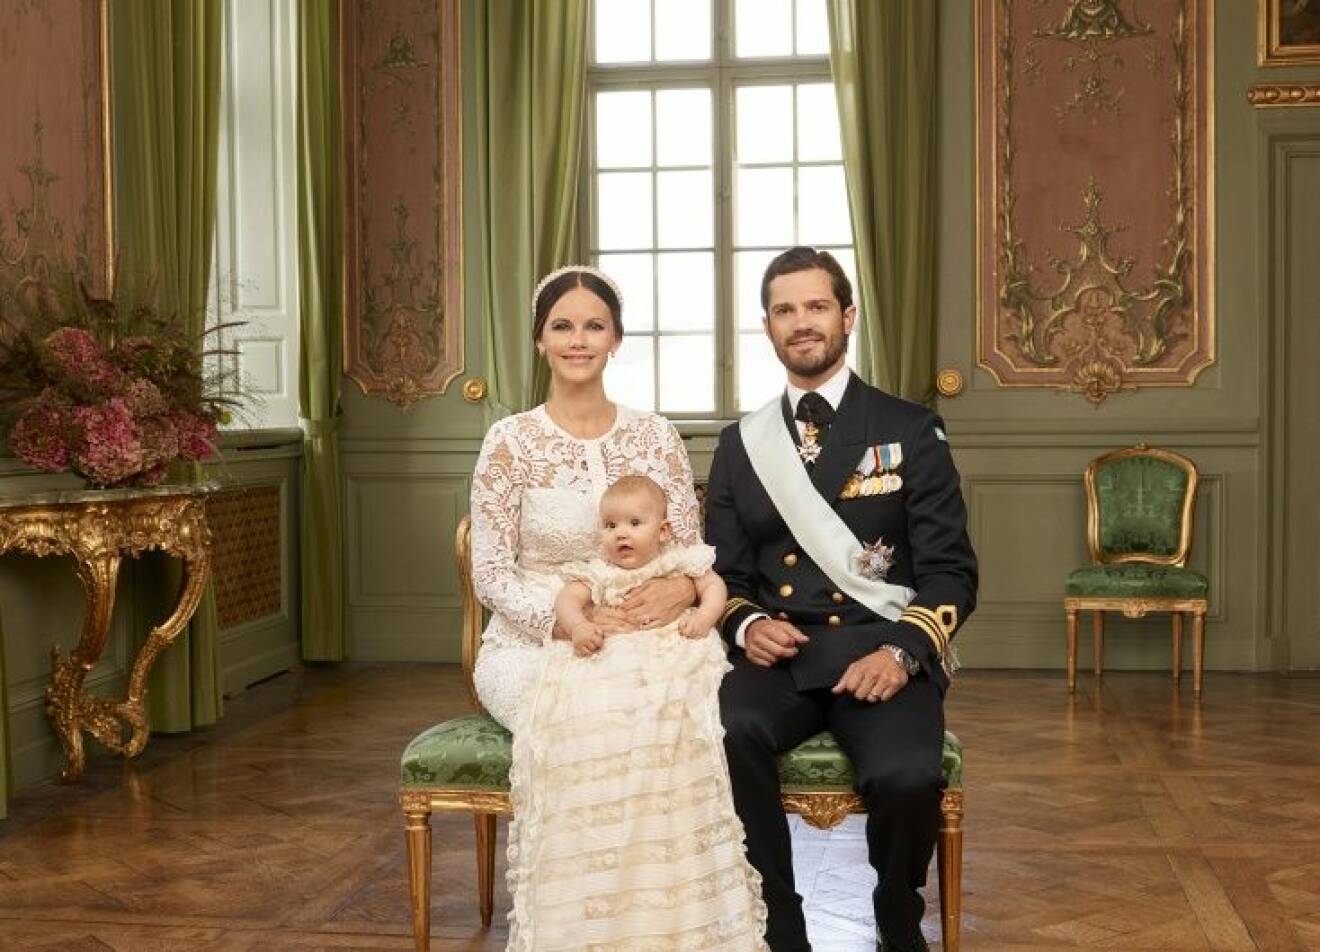 H.K.H. Prins Alexanders dop i Drottningholms Slottskyrka 9 september 2016.